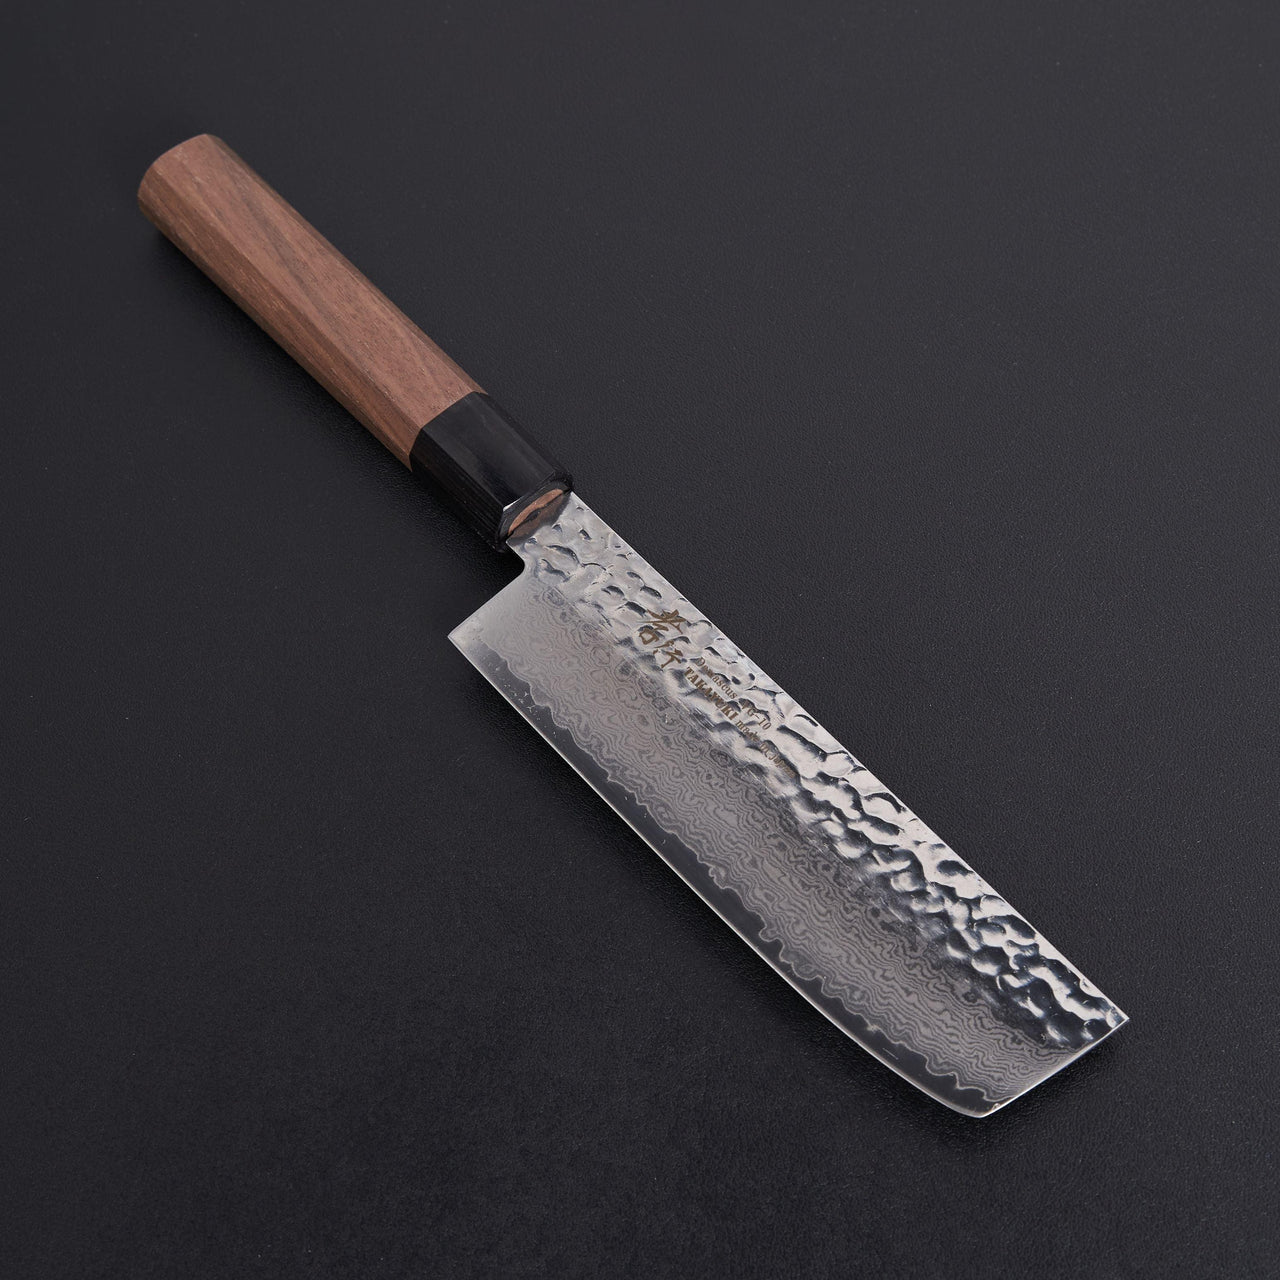 Sakai Takayuki Walnut 33 Layer Damascus Nakiri 160mm-Knife-Sakai Takayuki-Carbon Knife Co